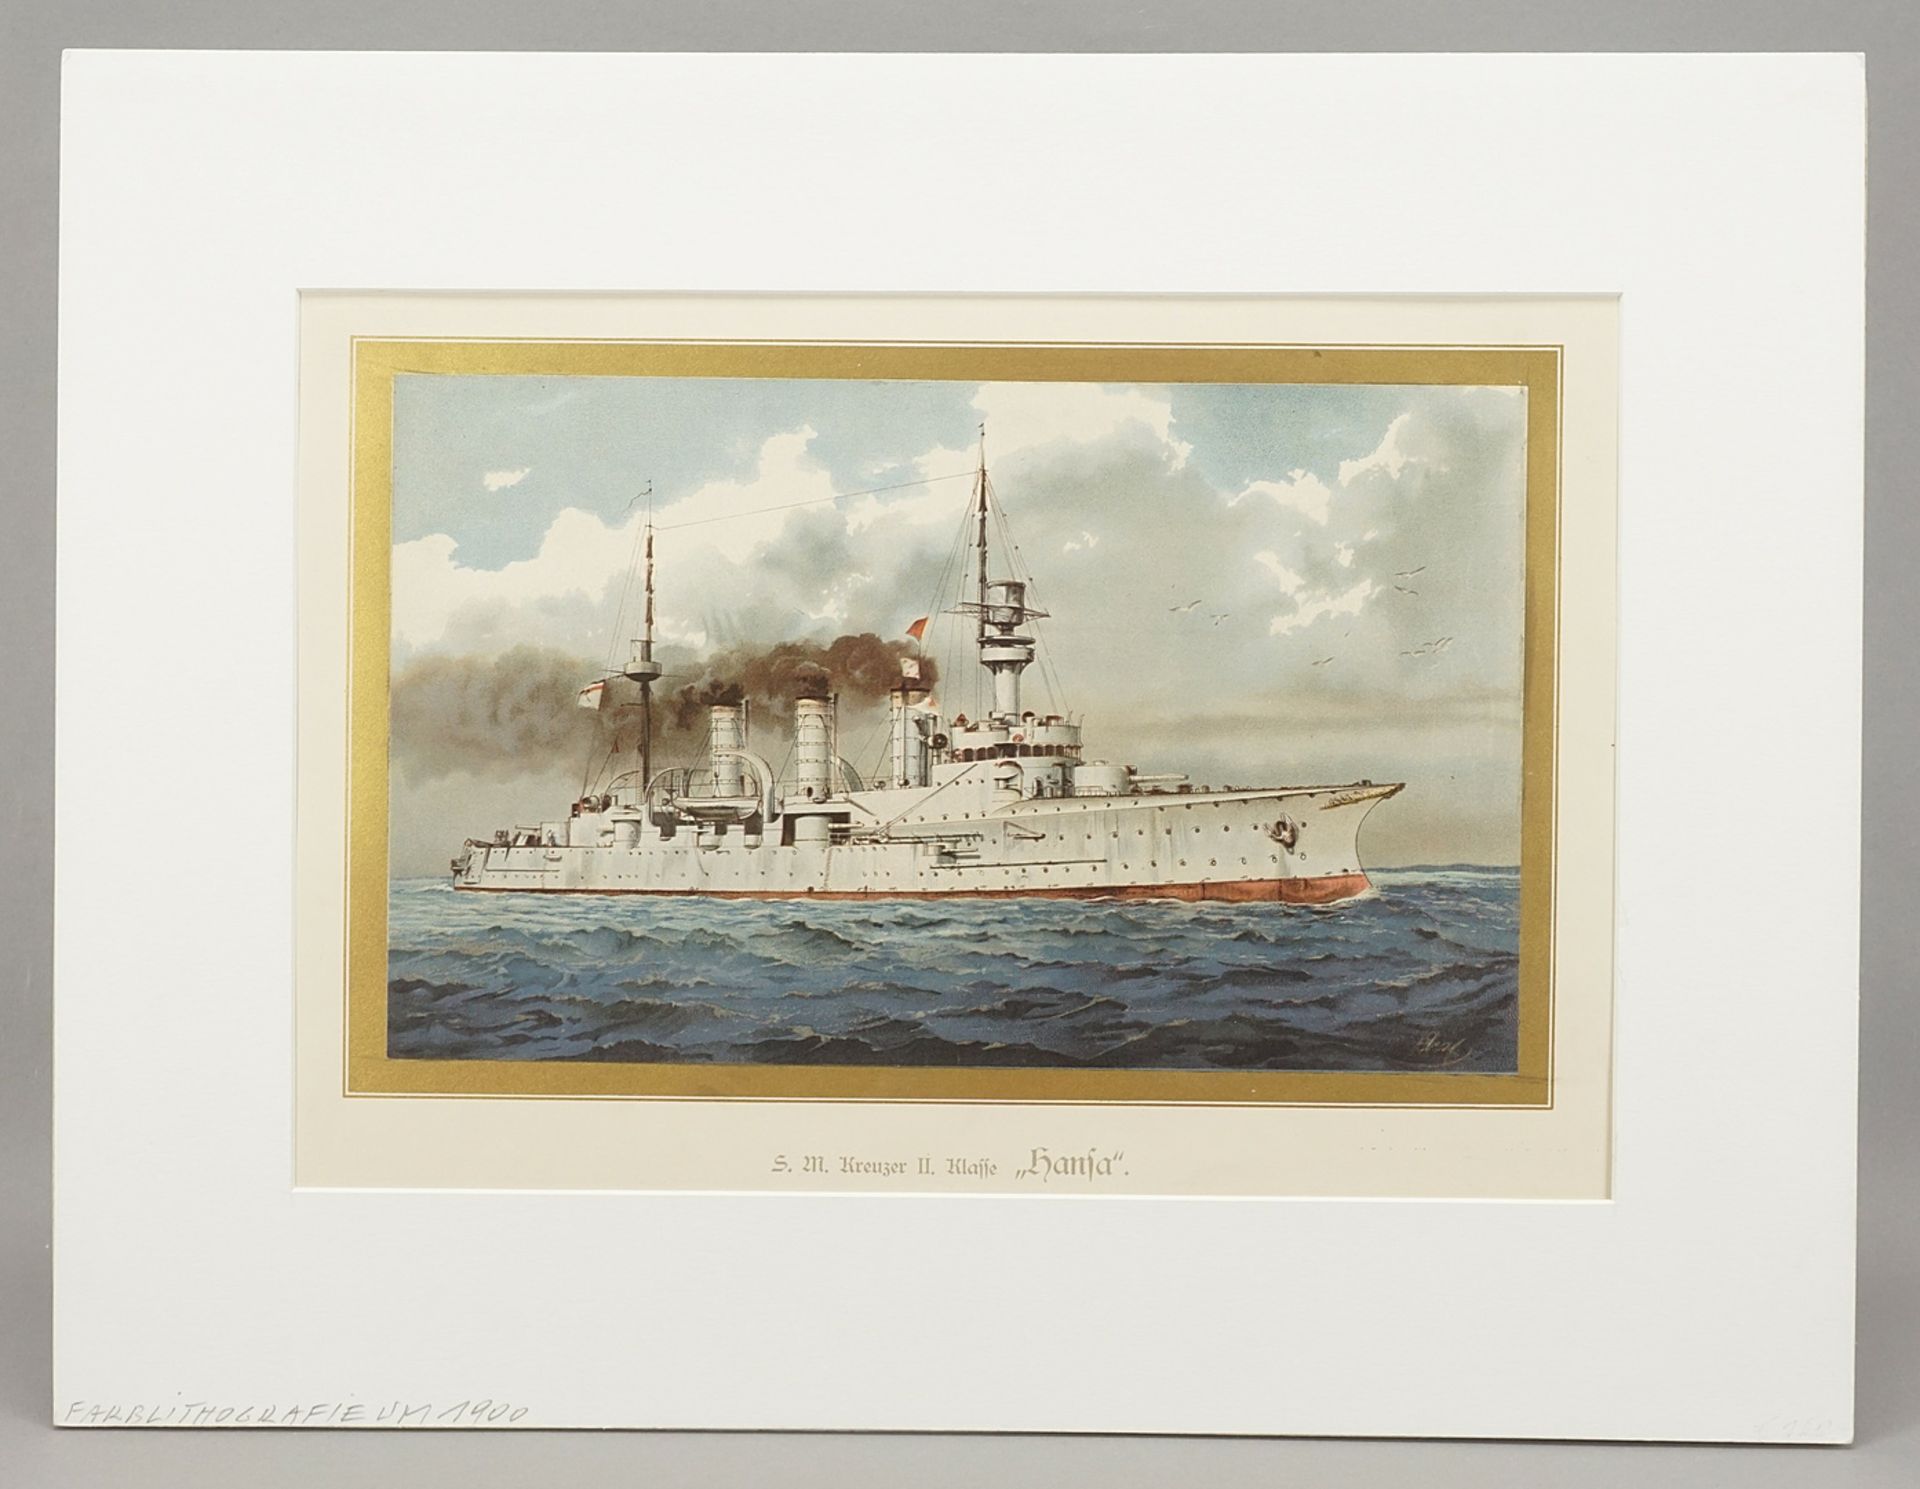 S.M. Cruiser "Hansa" - Image 2 of 3